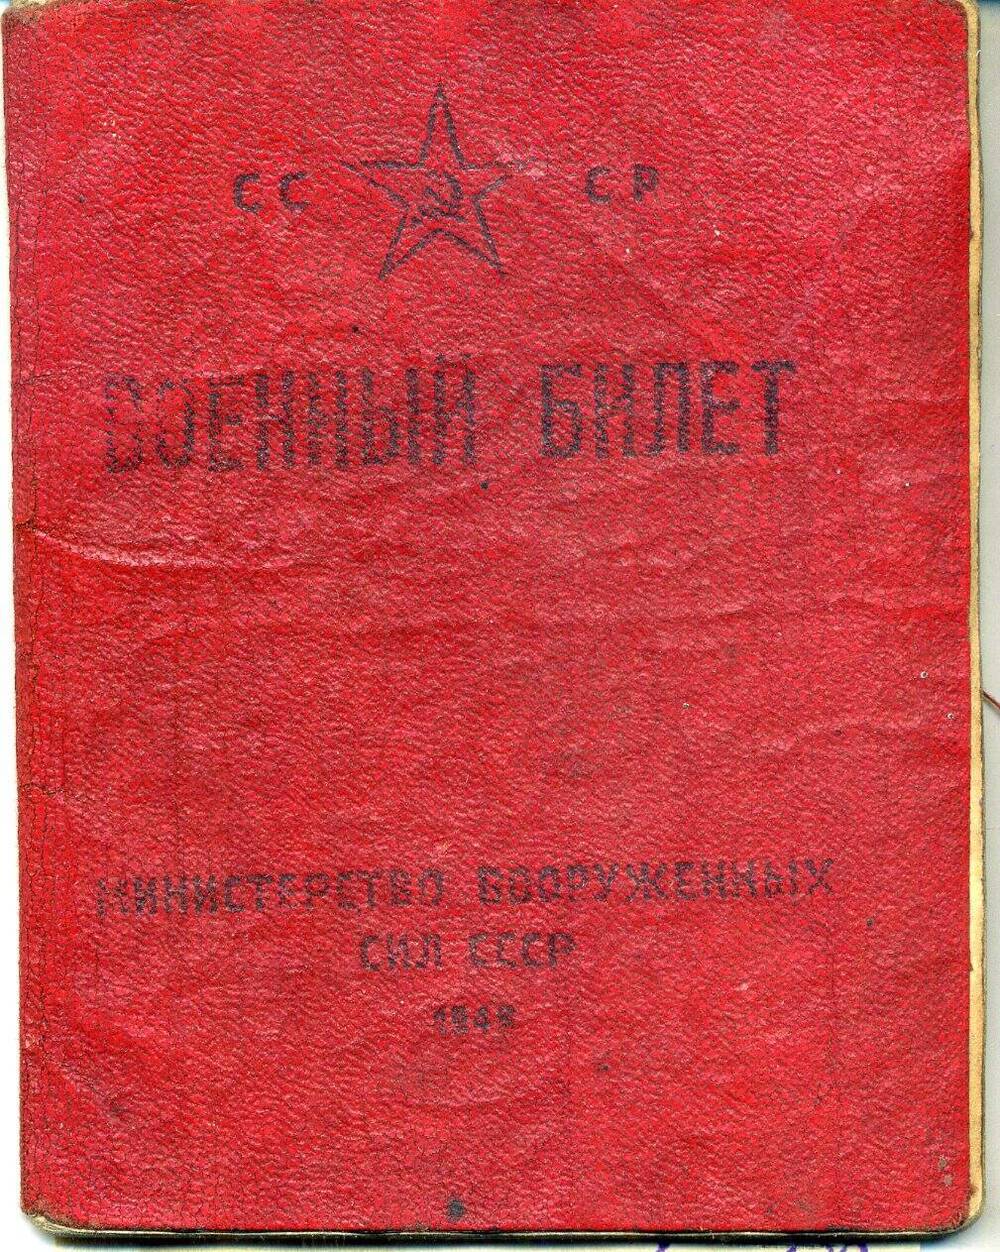 Билет военный Масловец Алексей Николаевича, 1903 г.р.